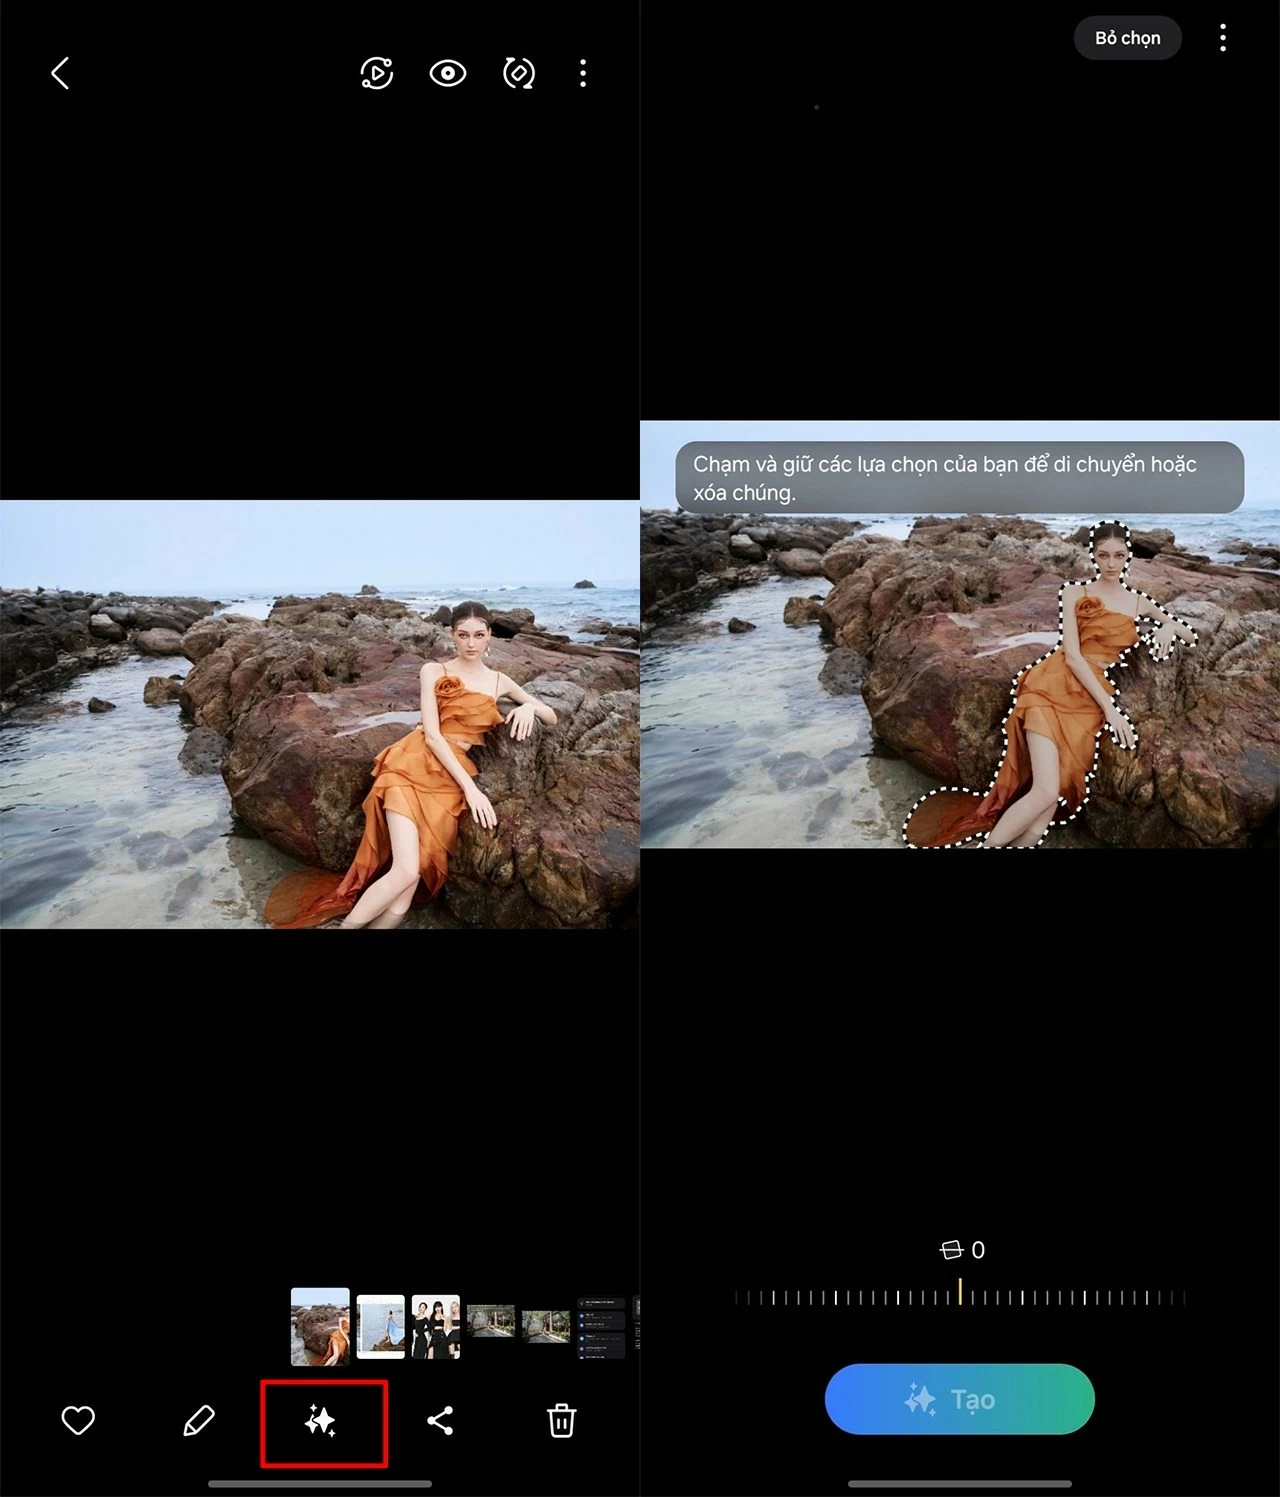 Sử dụng AI để di chuyển chủ thể trong ảnh trên Samsung